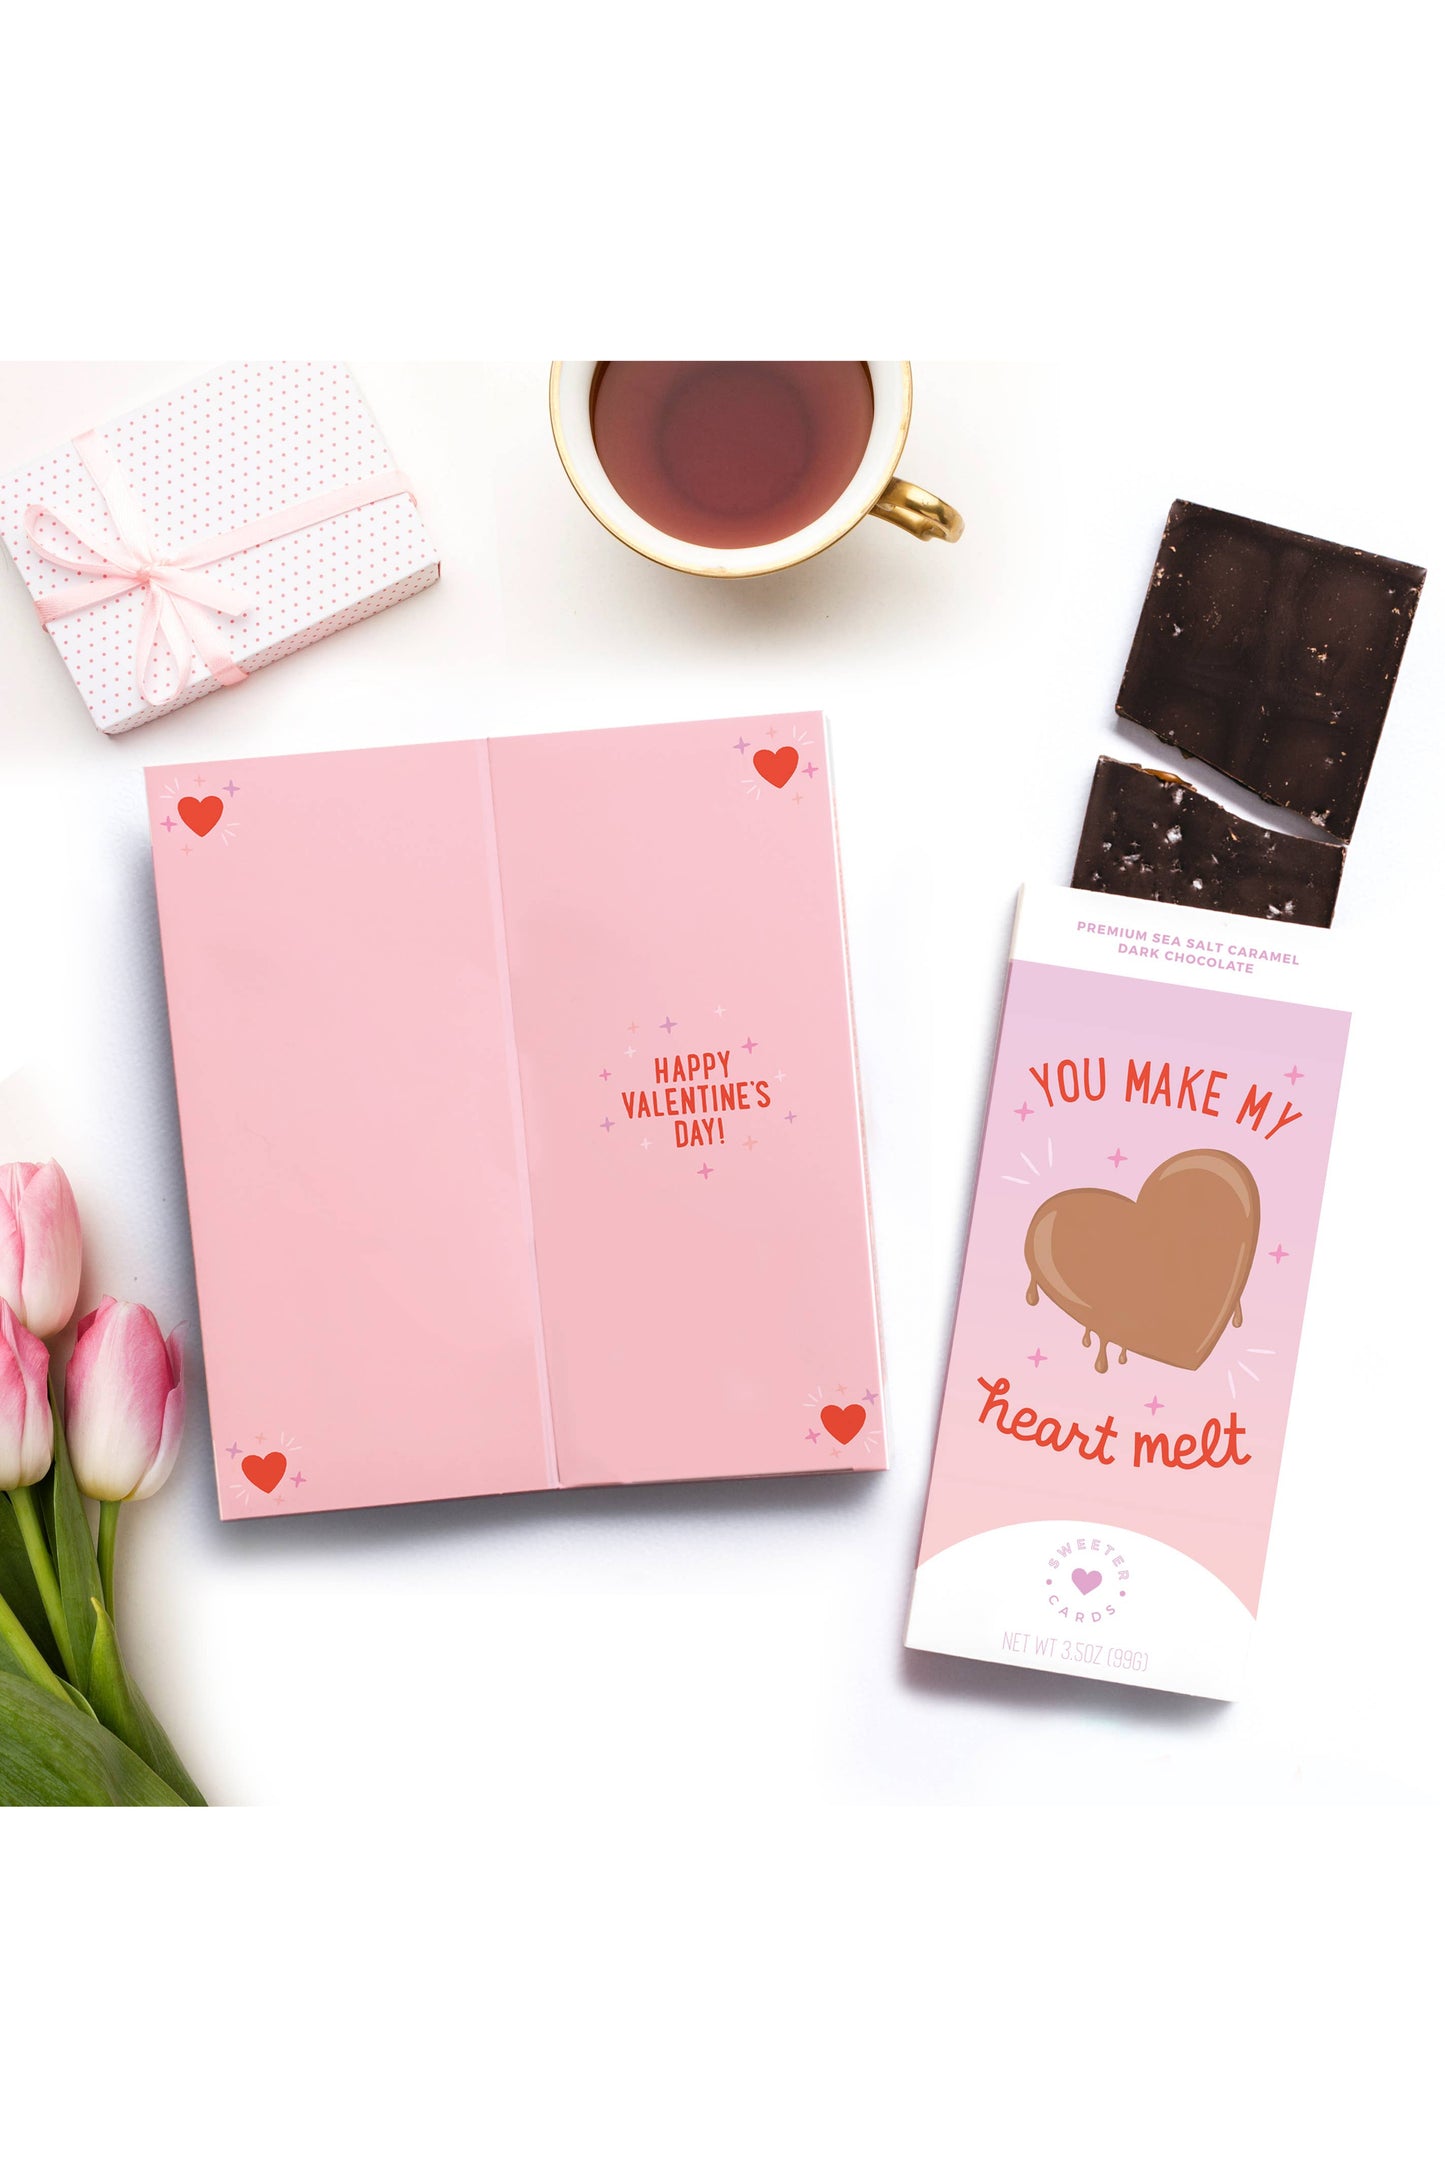 Valentine's Day Card w Chocolate Bar – Make My Heart Melt